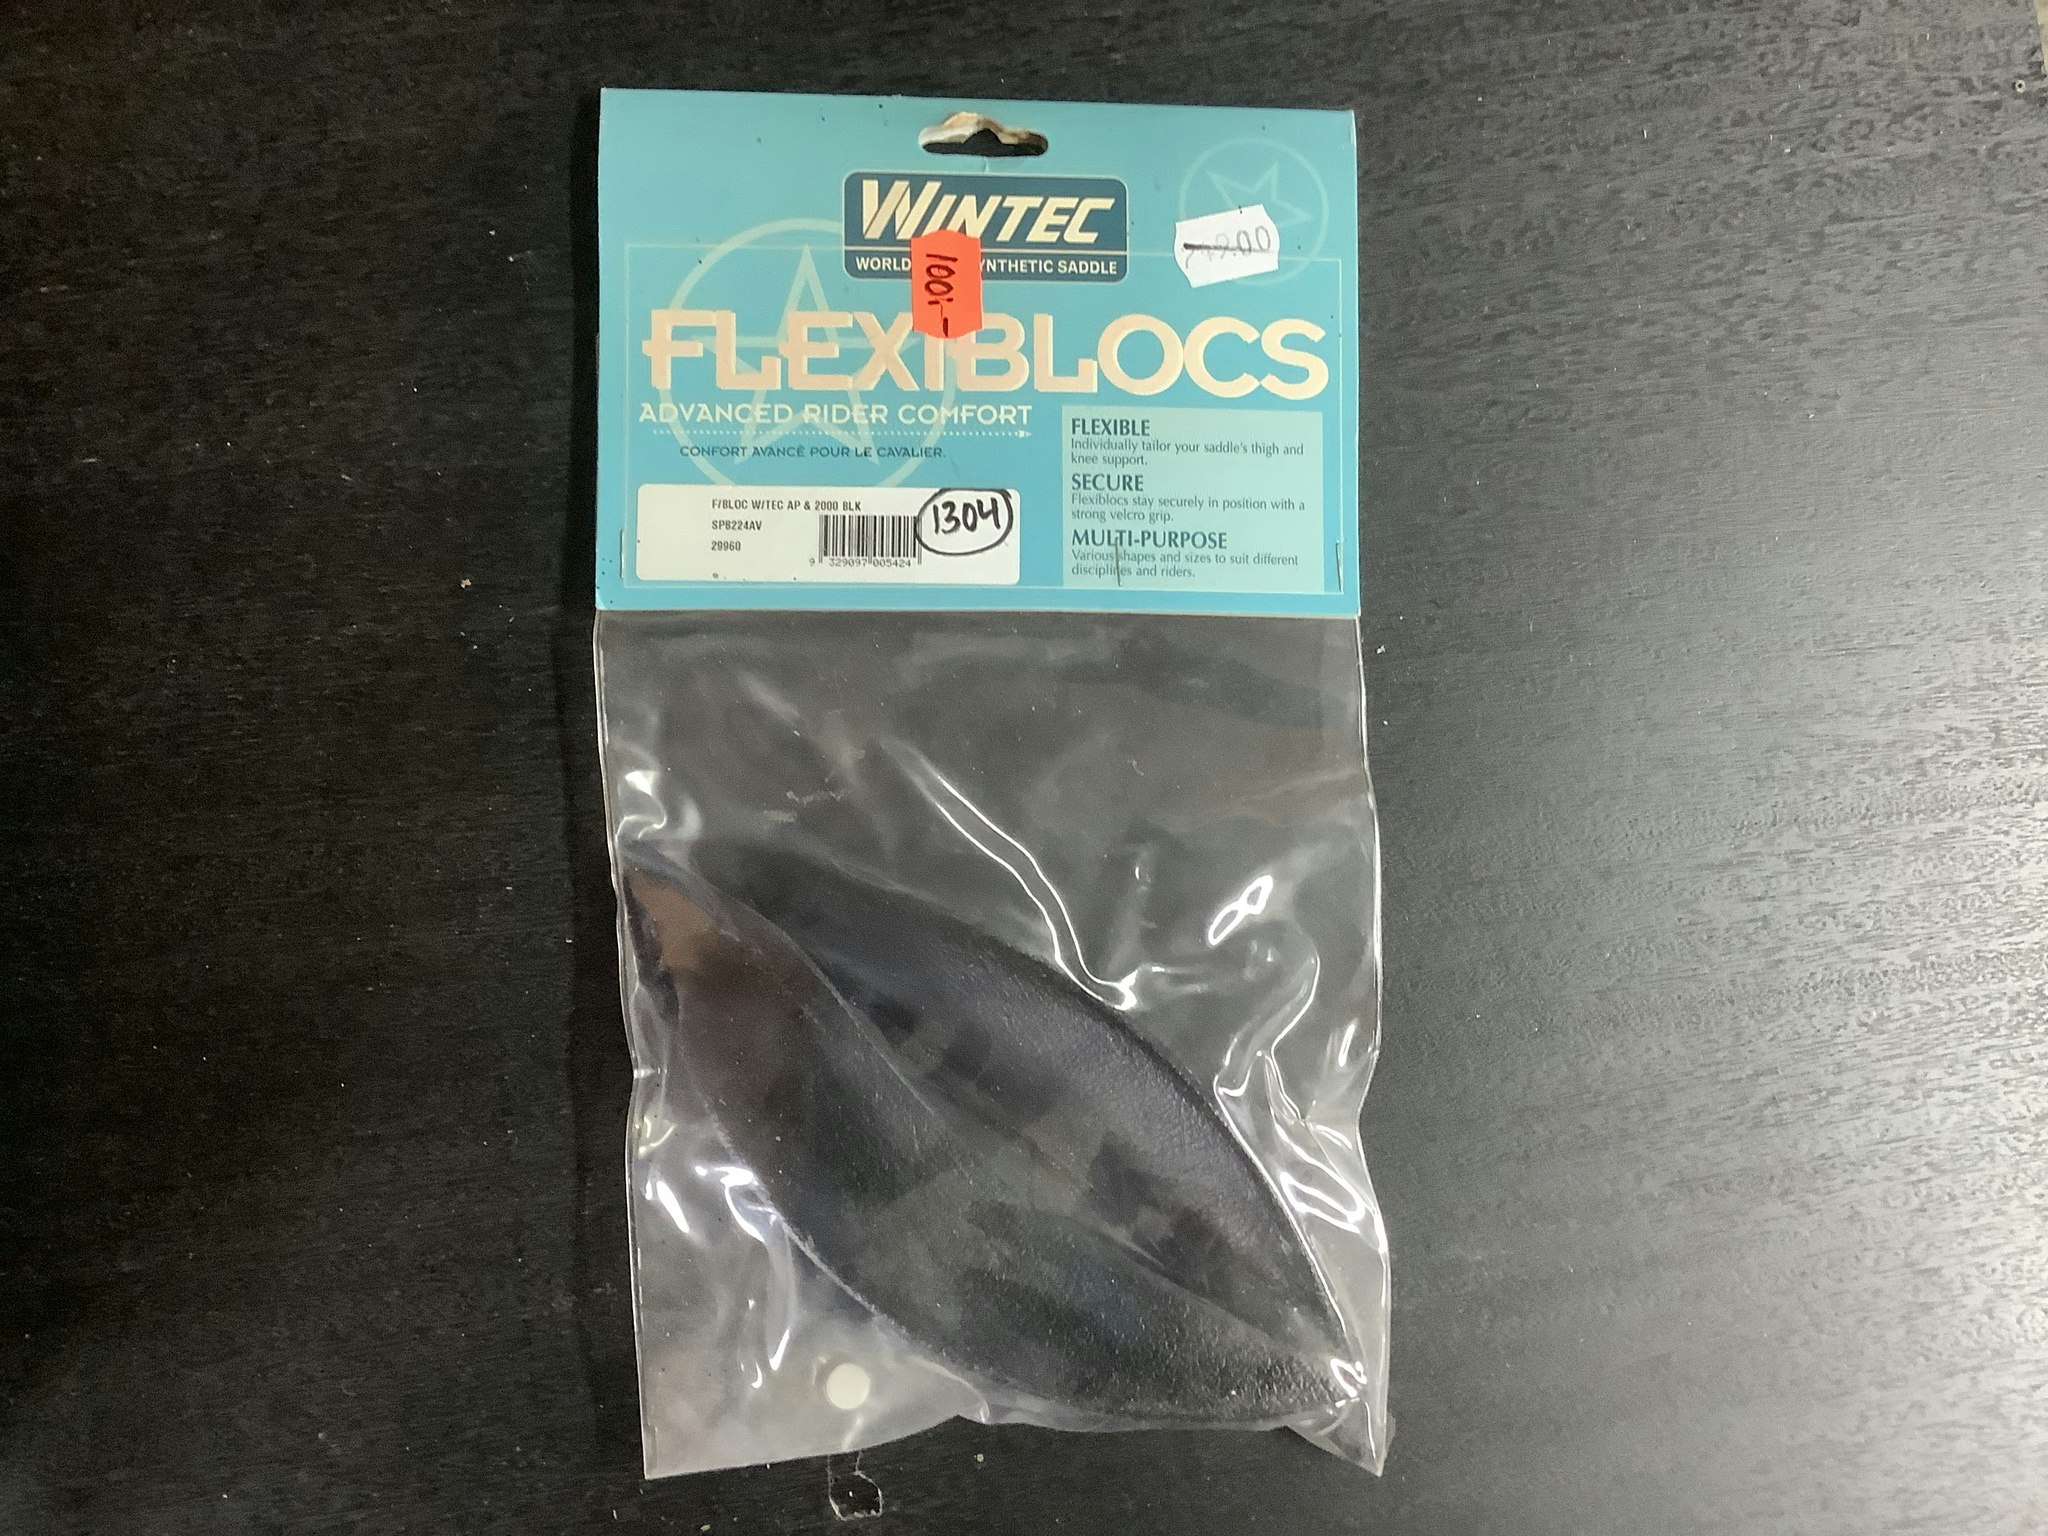 Wintec flexiblocs,ny